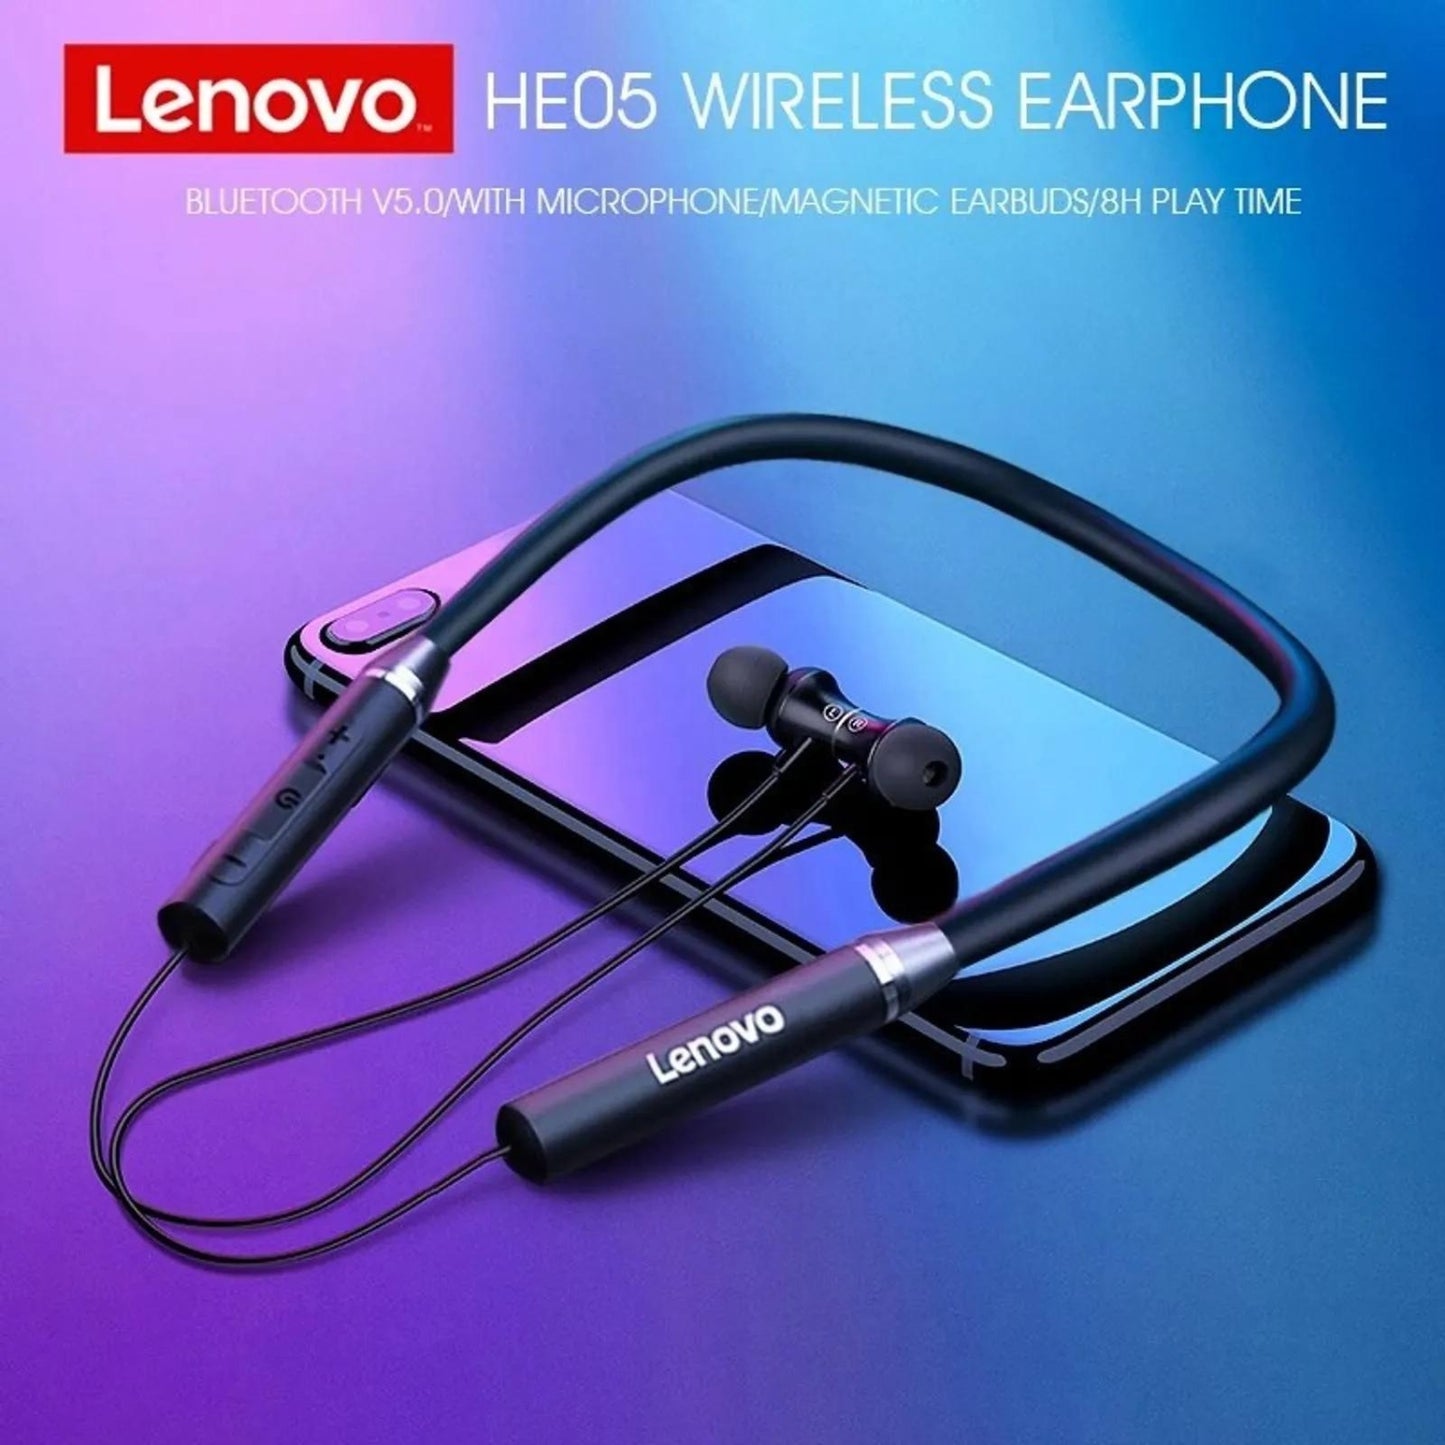 Audifonos Bluetooth Lenovo HE05 + Mochila Portalaptop Con Clave + Lentes de regalo